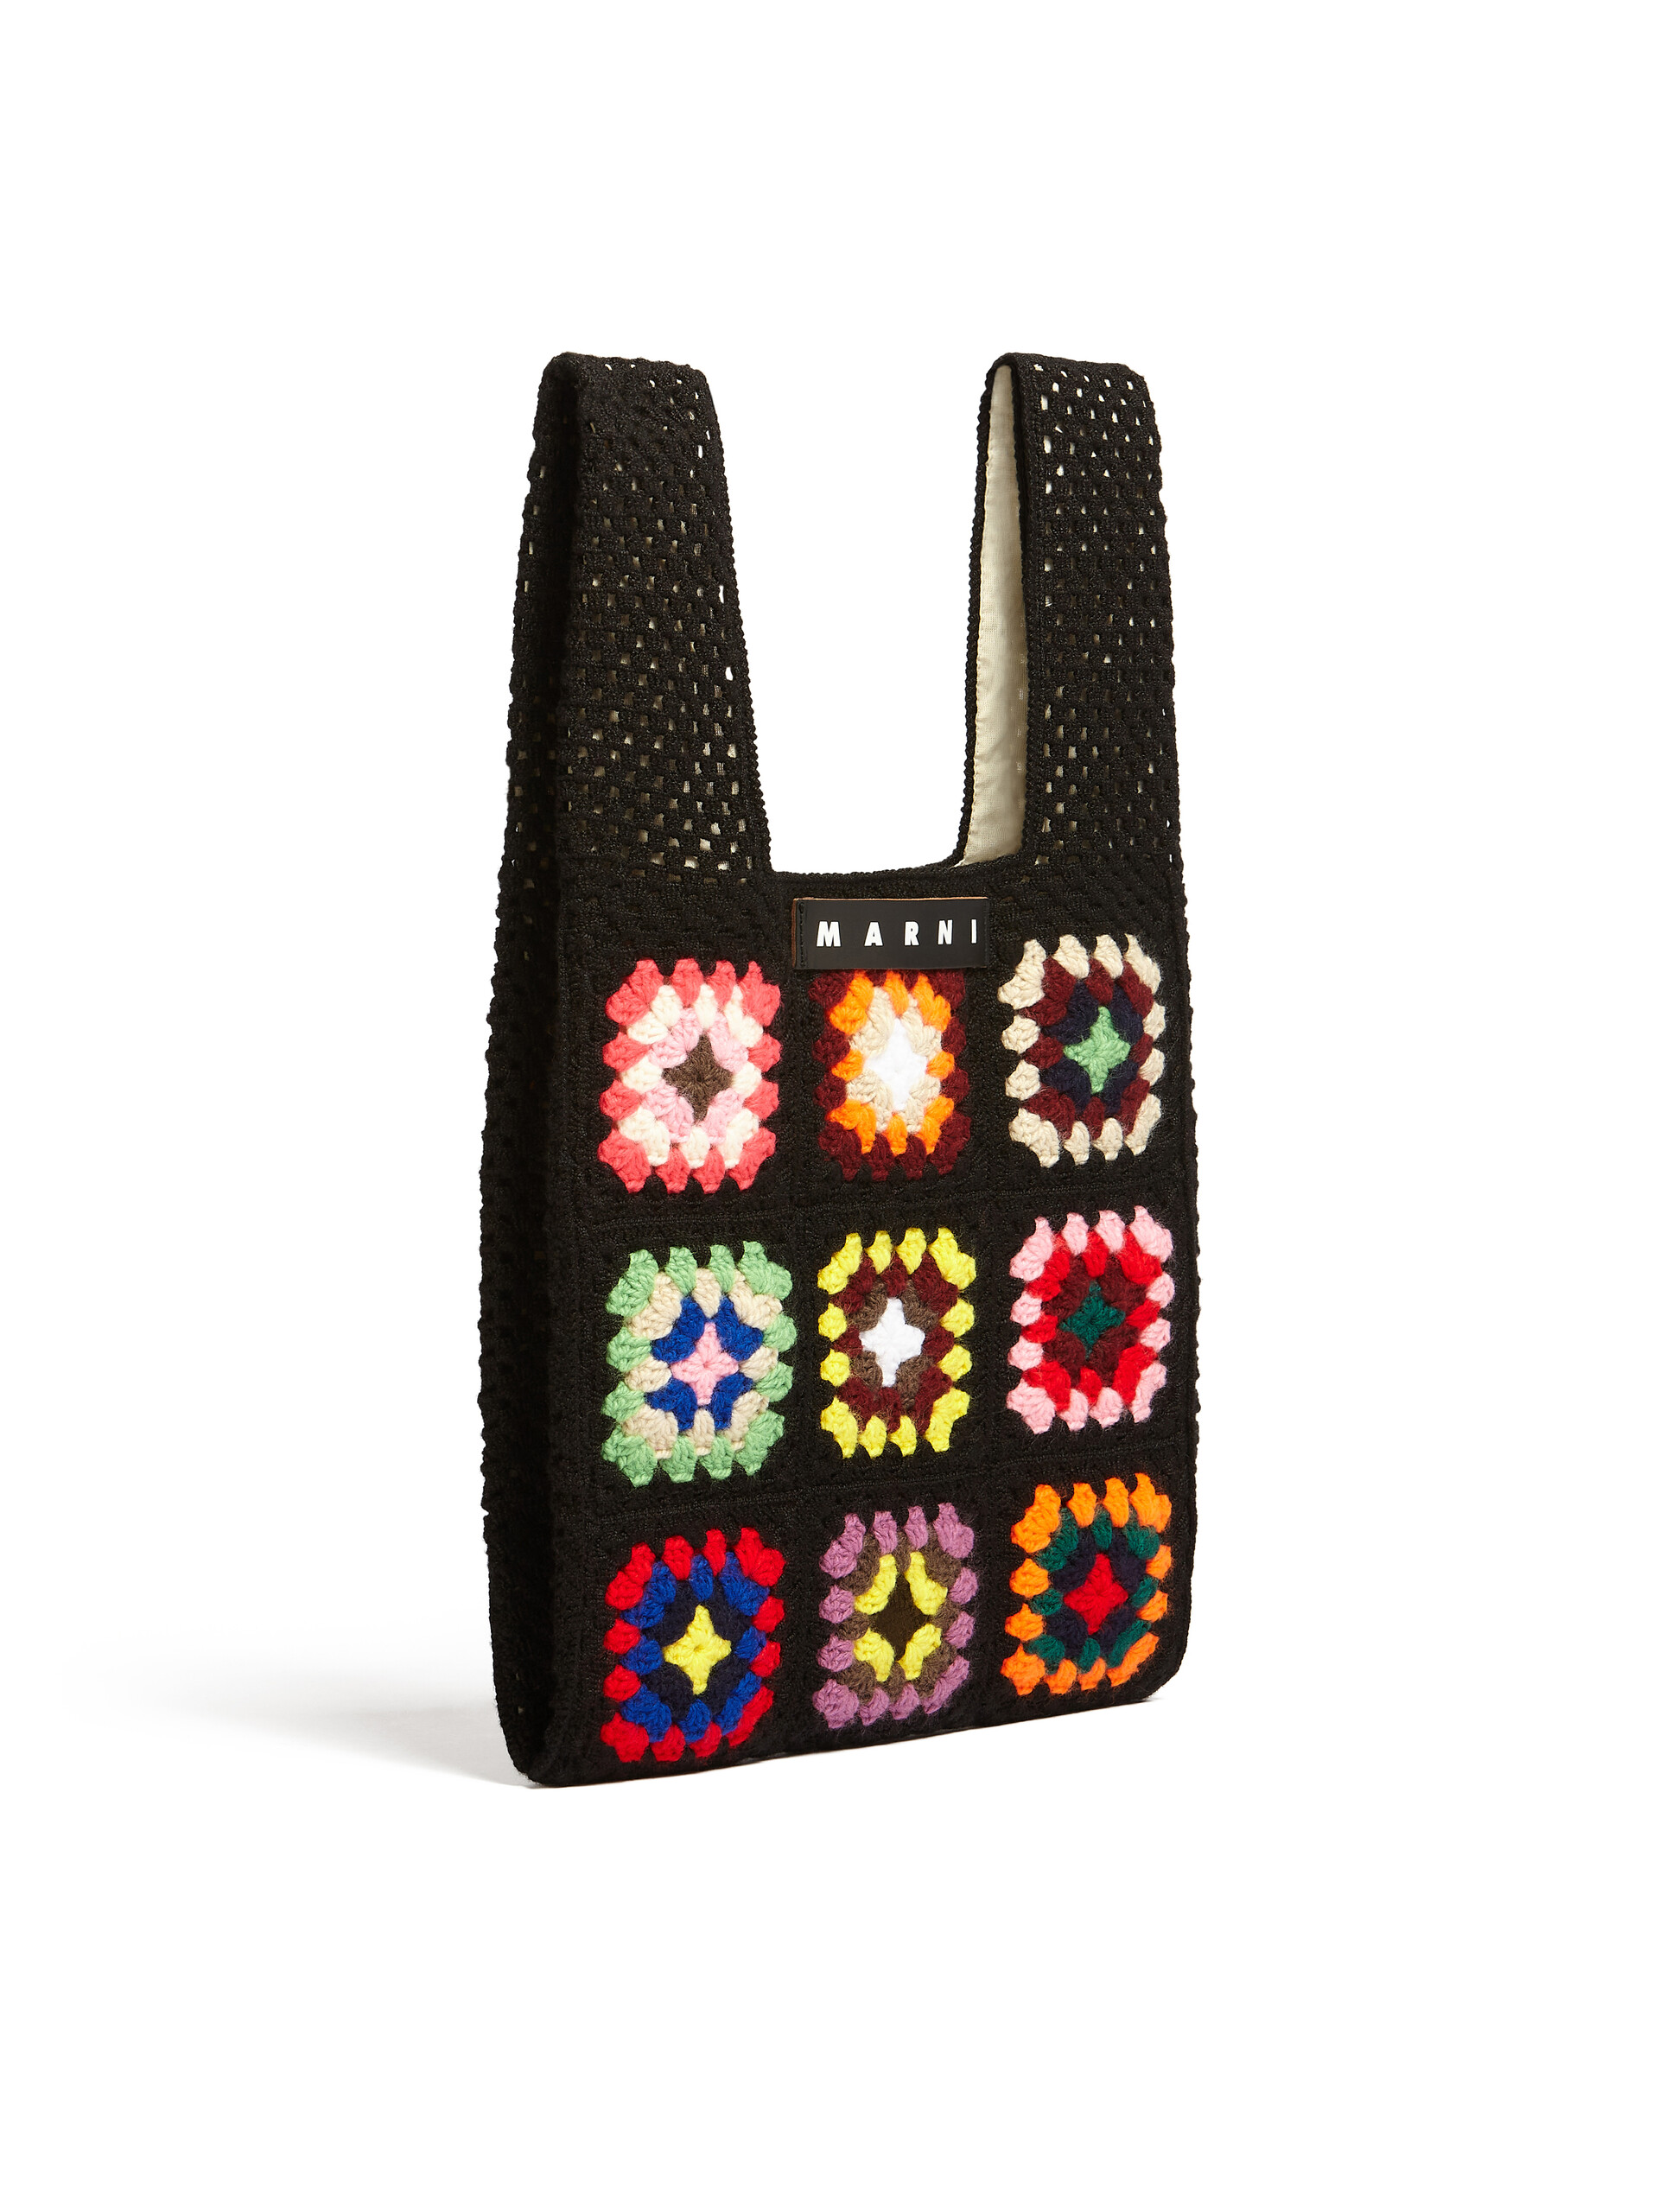 MARNI MARKET FISH bag in black crochet - Bags - Image 2